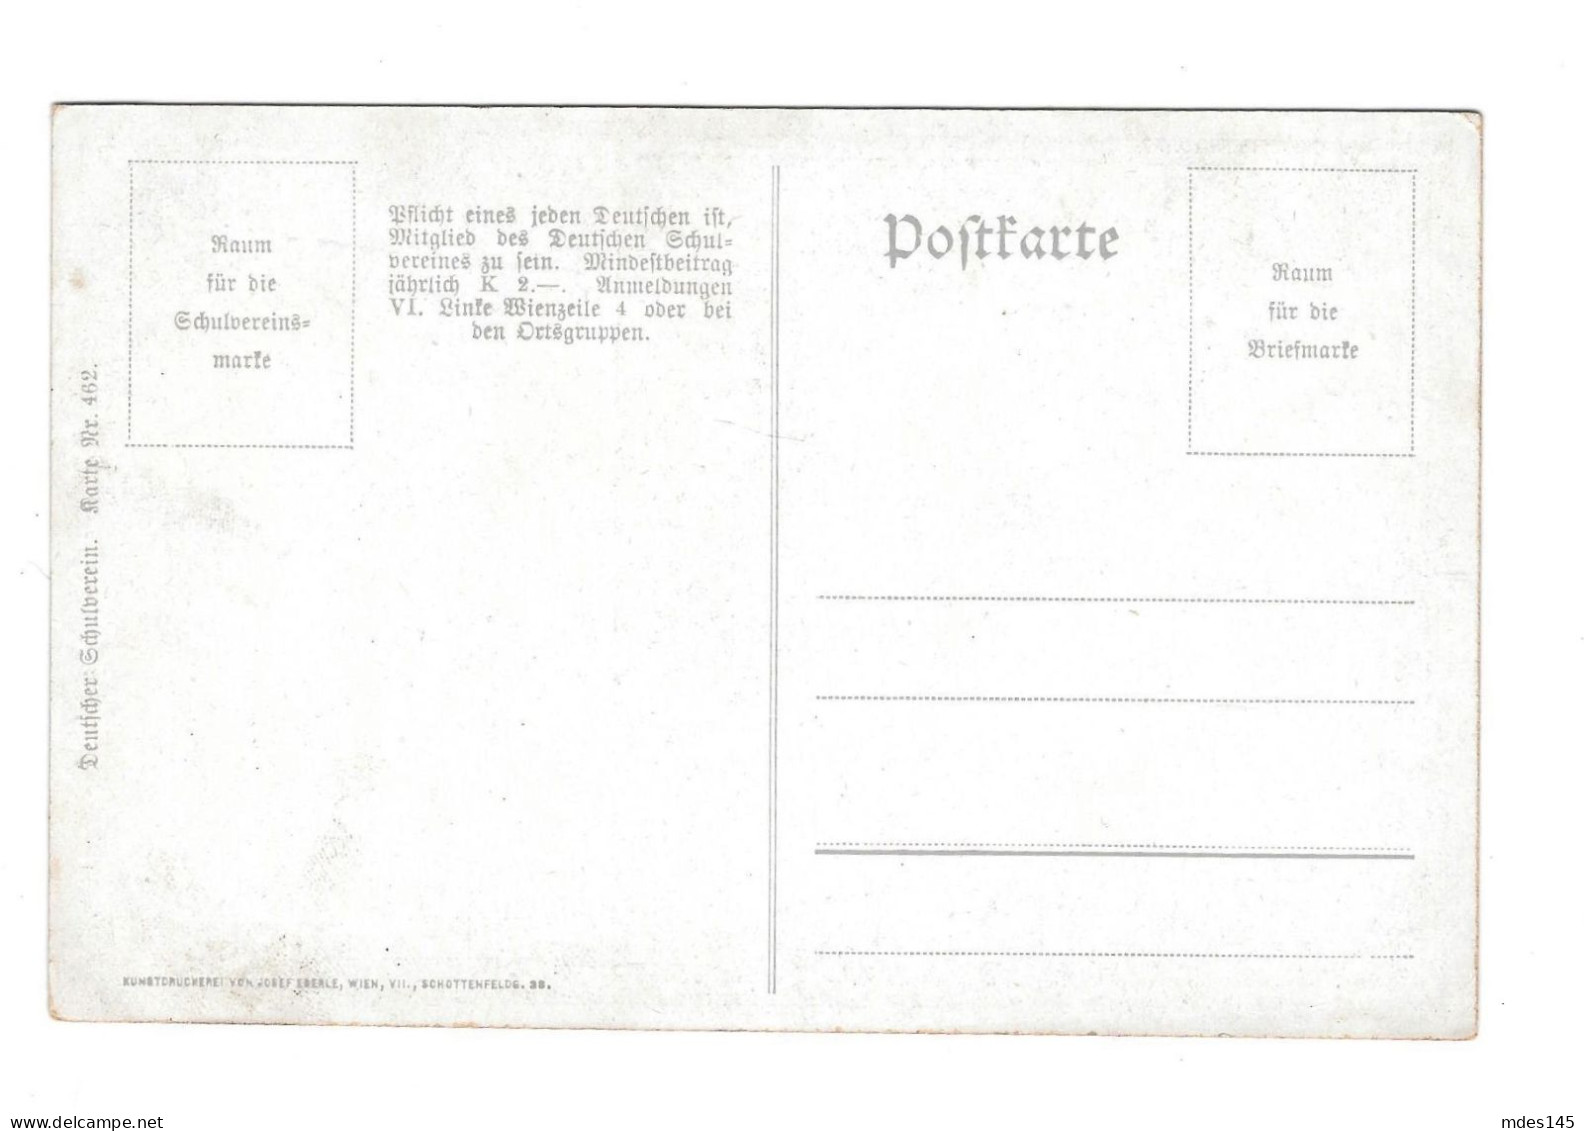 Es Waren Zwei Konigskinder Deutscher Schulverien Wein Nr 462 Josef Eberle Postcard - Schilderijen